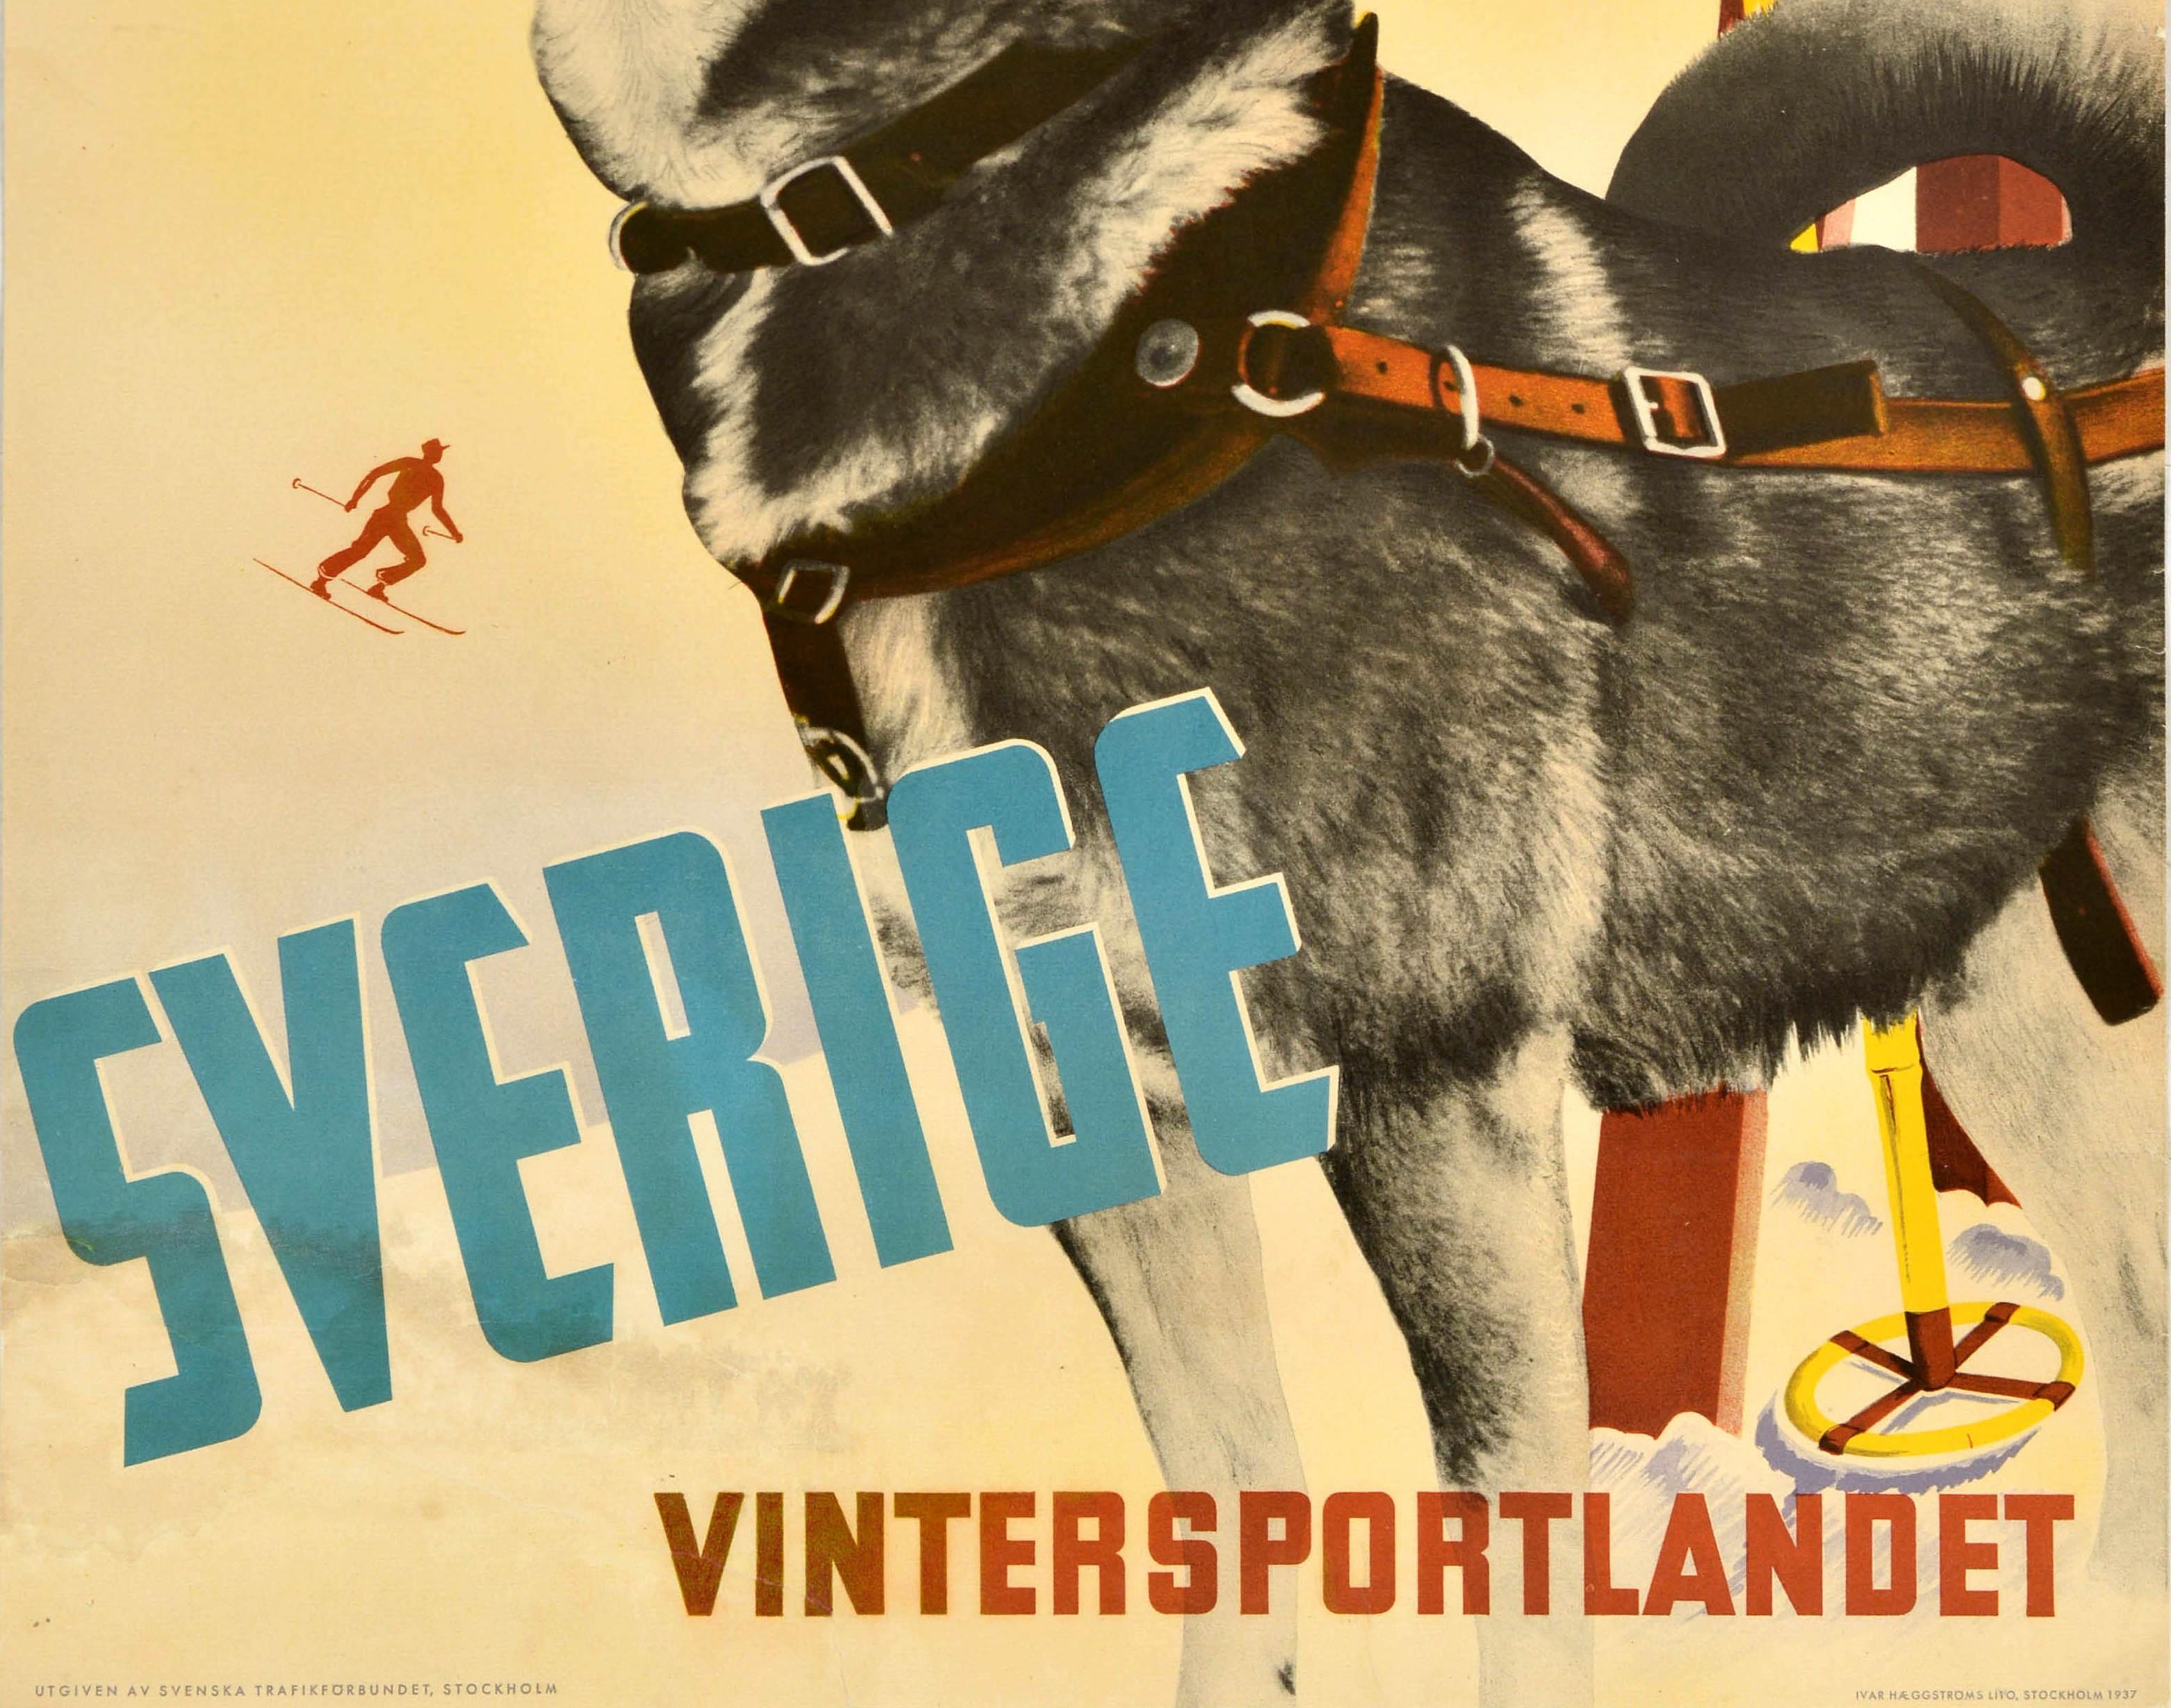 Swedish Original Vintage Ski Poster Sverige Vintersportlandet Sweden Winter Sports Dog For Sale